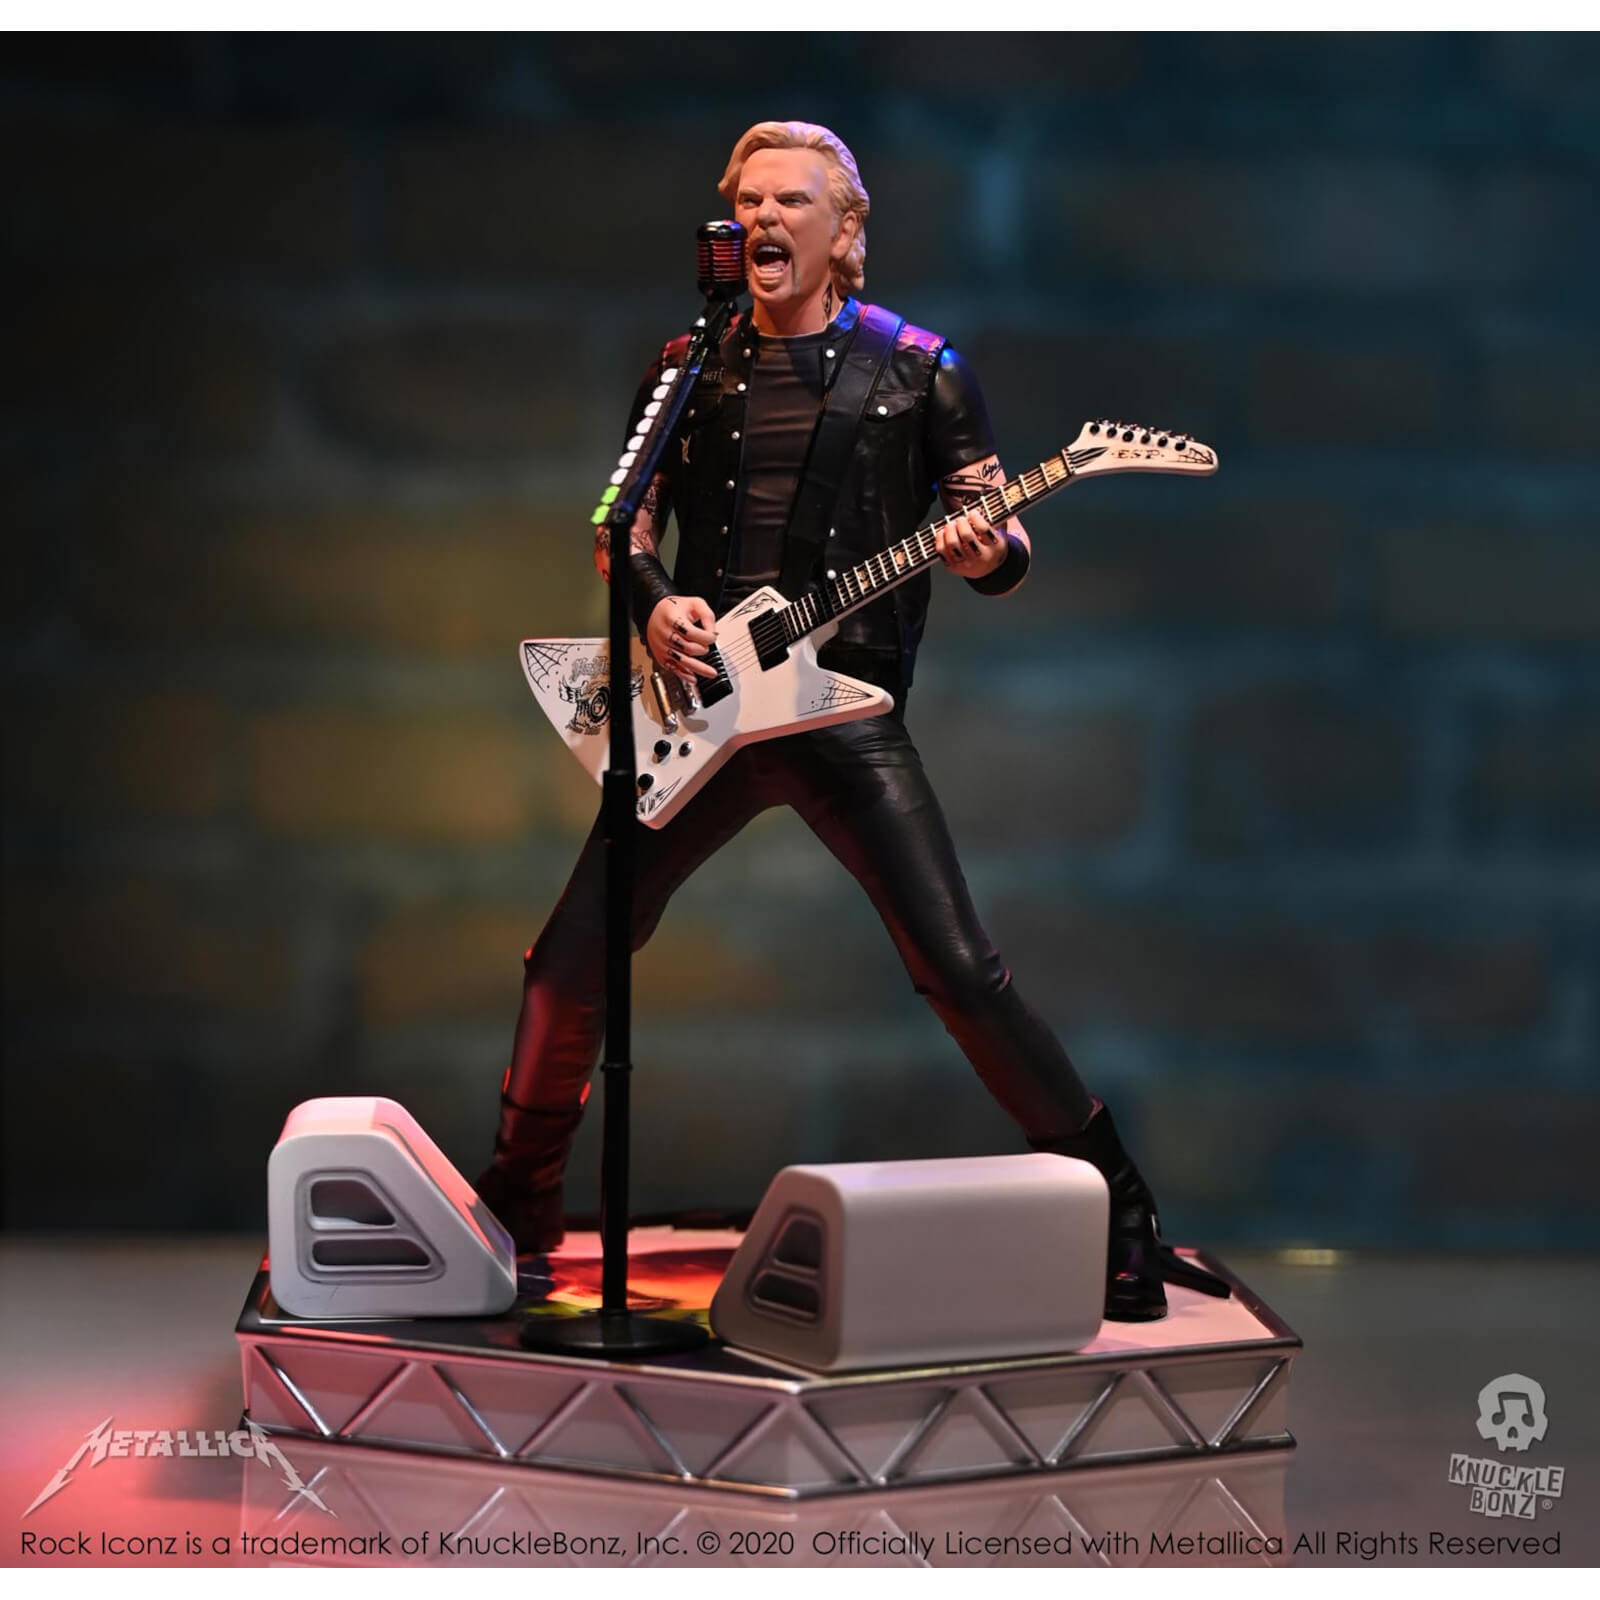 Knucklebonz Metallica Rock Iconz Statue - James Hetfield